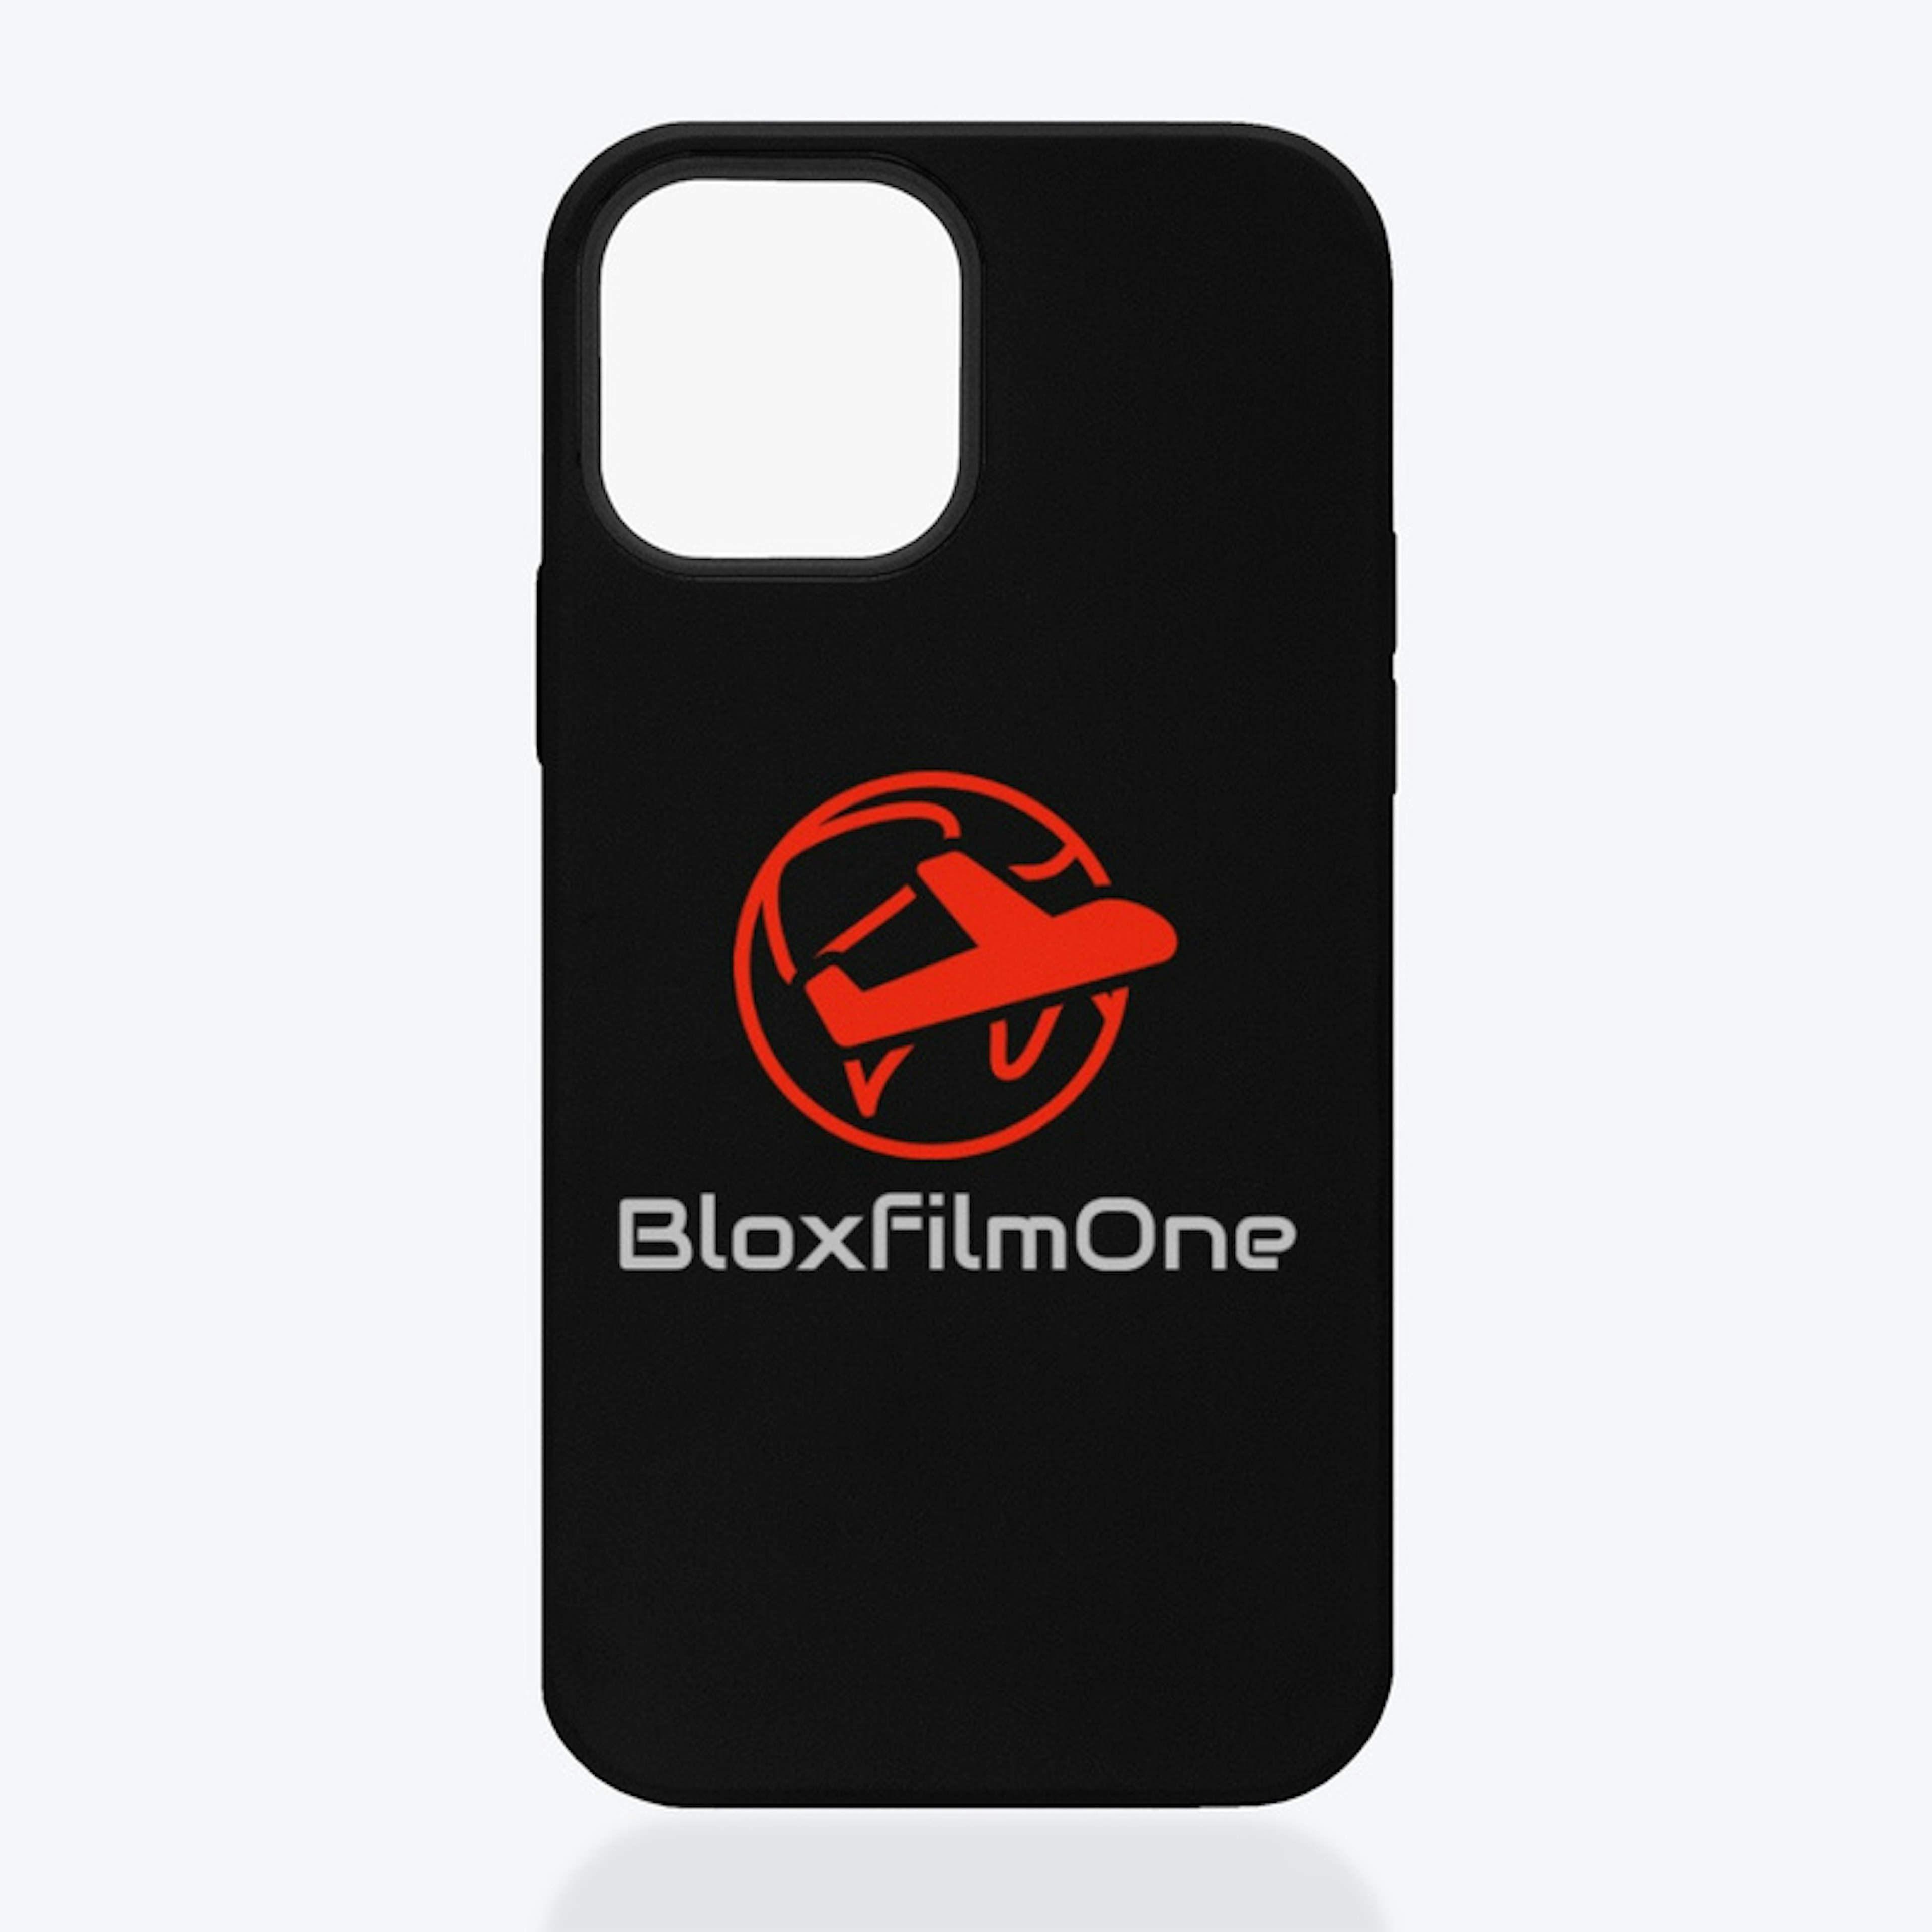 BloxfilmOne Travel Gear